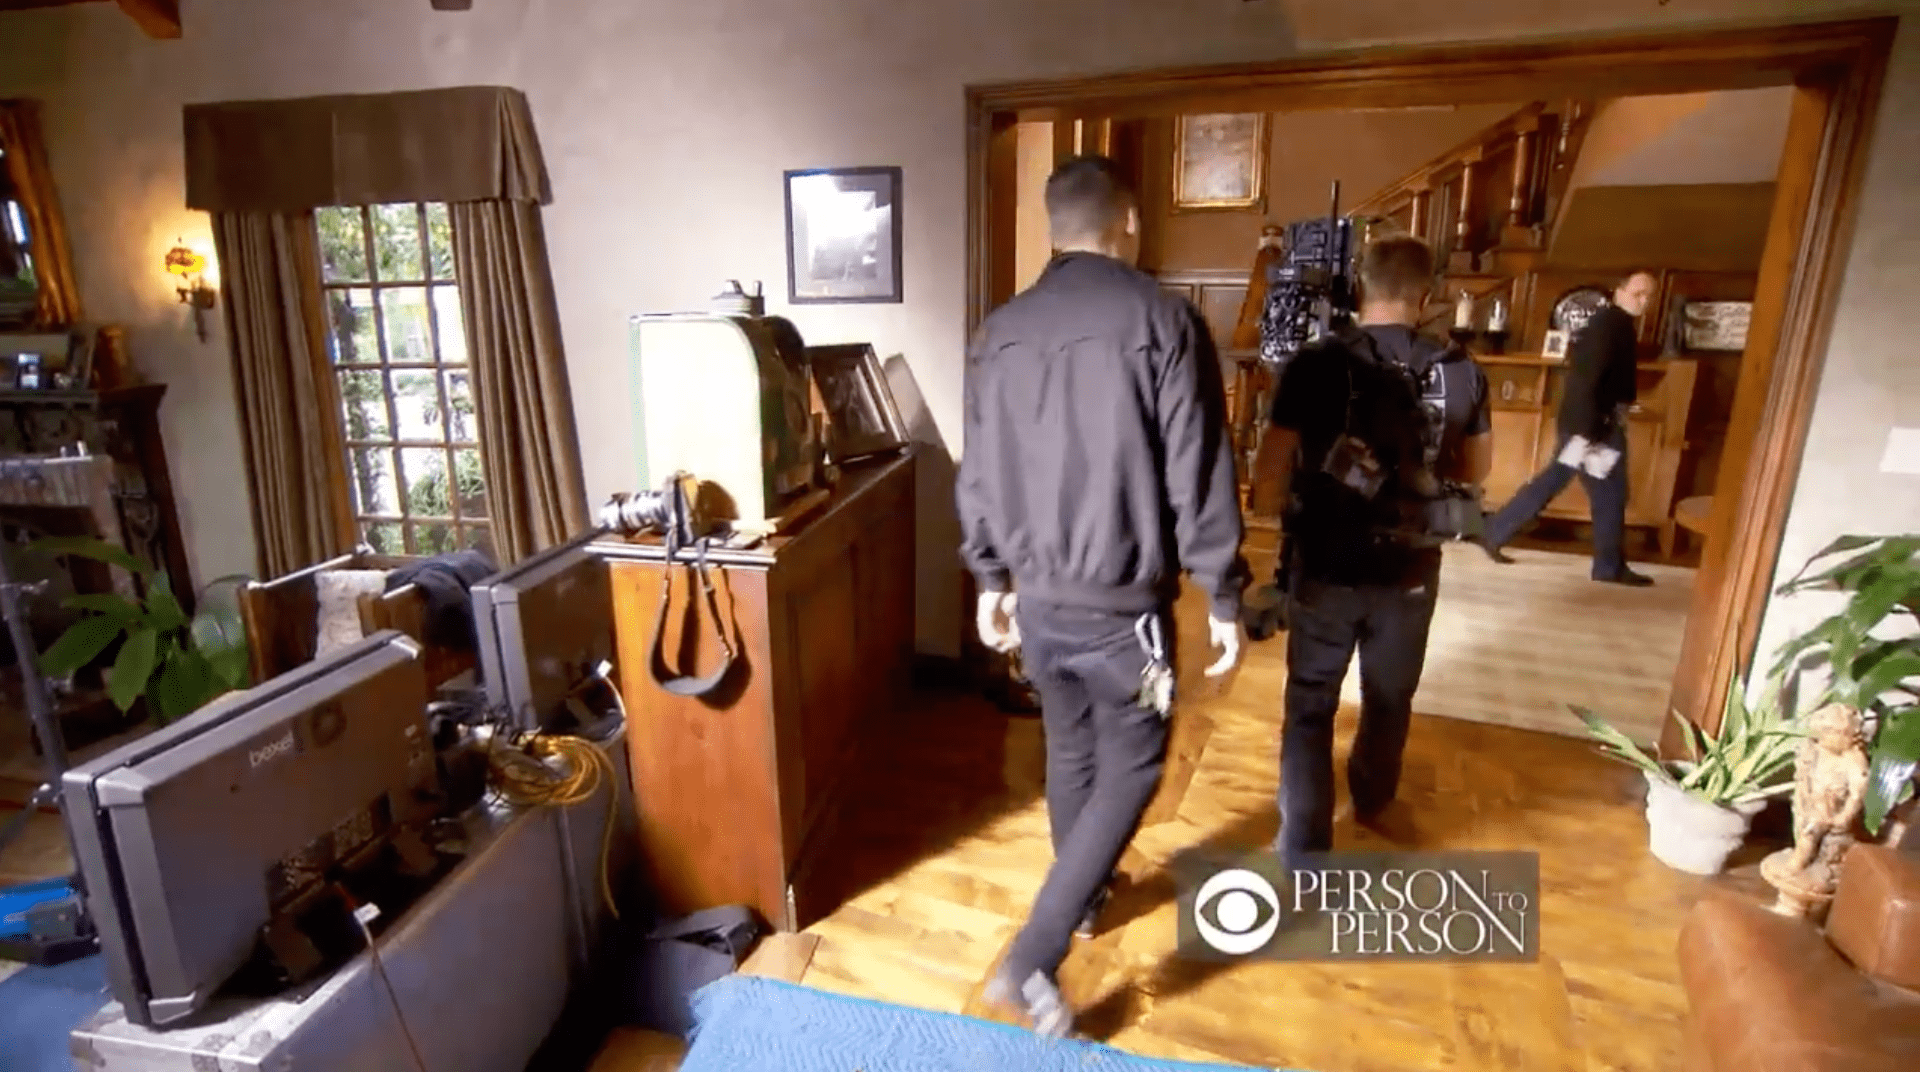 Una parte de la casa de George Clooney en Los Ángeles grabada en "Person to Person" de "CBS News", el 8 de febrero de 2012. | Foto: YouTube/CBS News